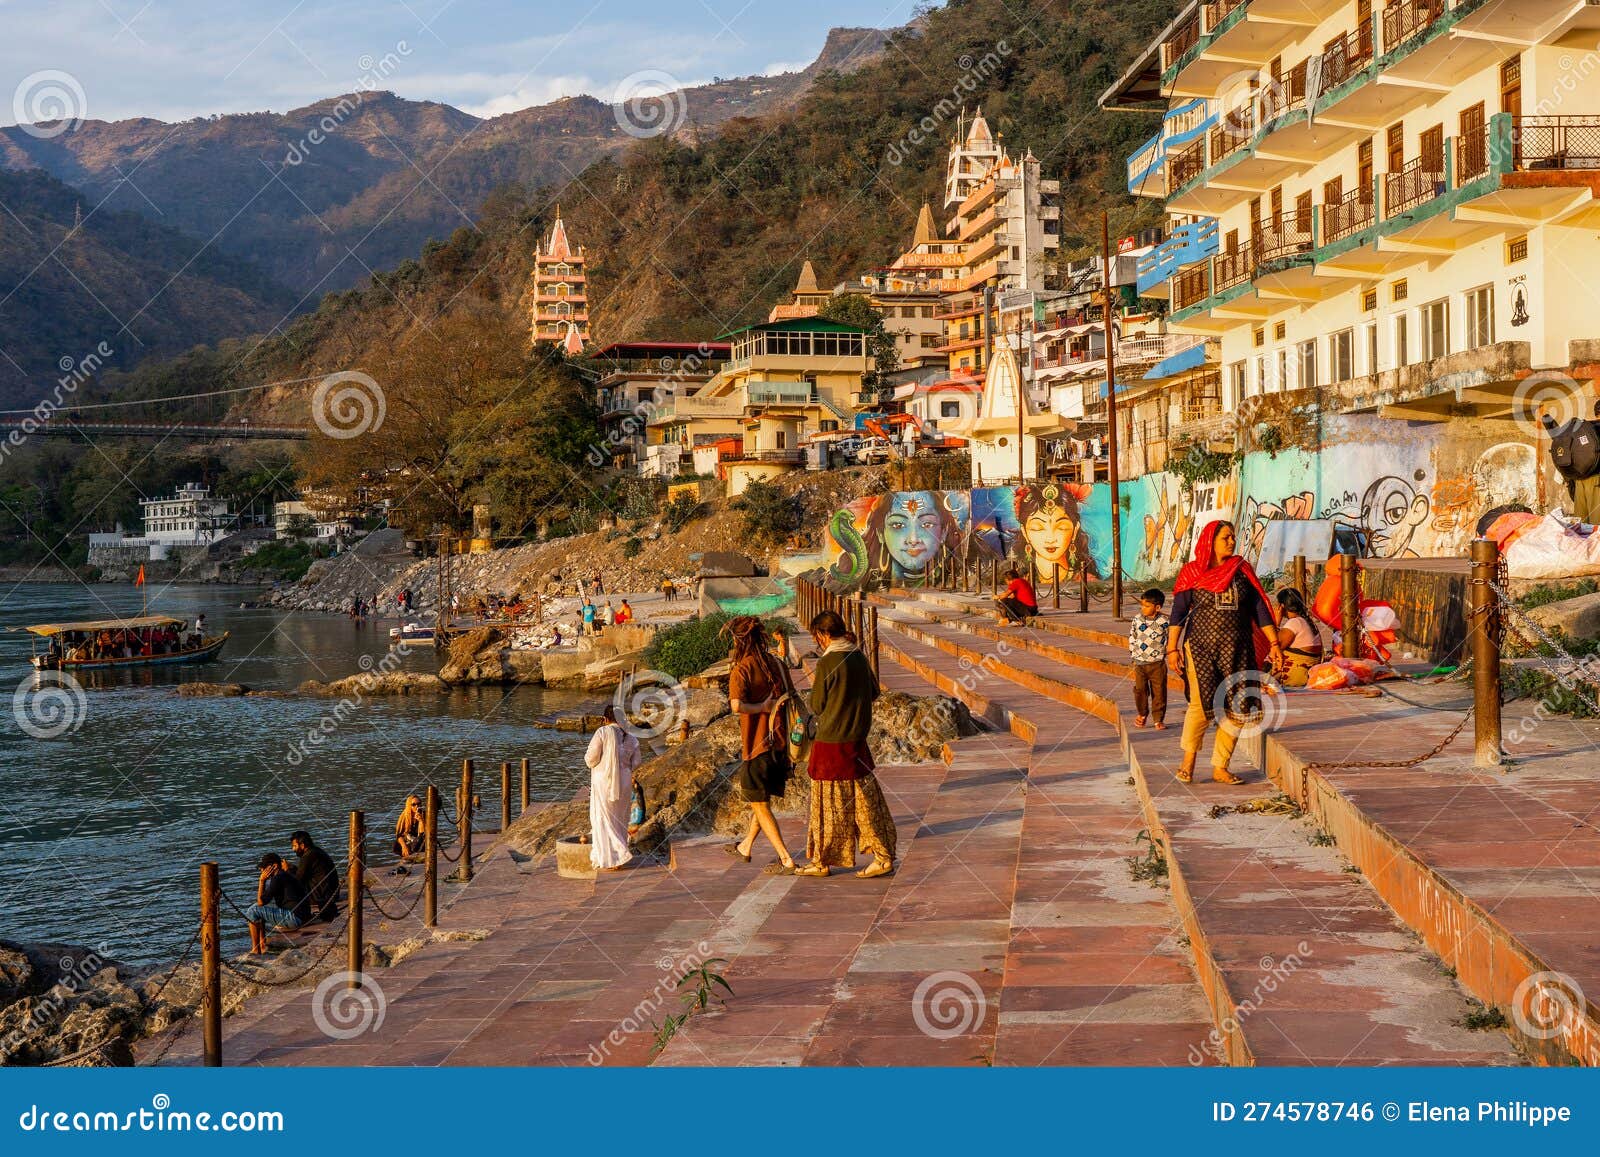 Rishikesh Uttarakhand India June 21st 2023view Stock Photo 2321706237 | Shutterstock